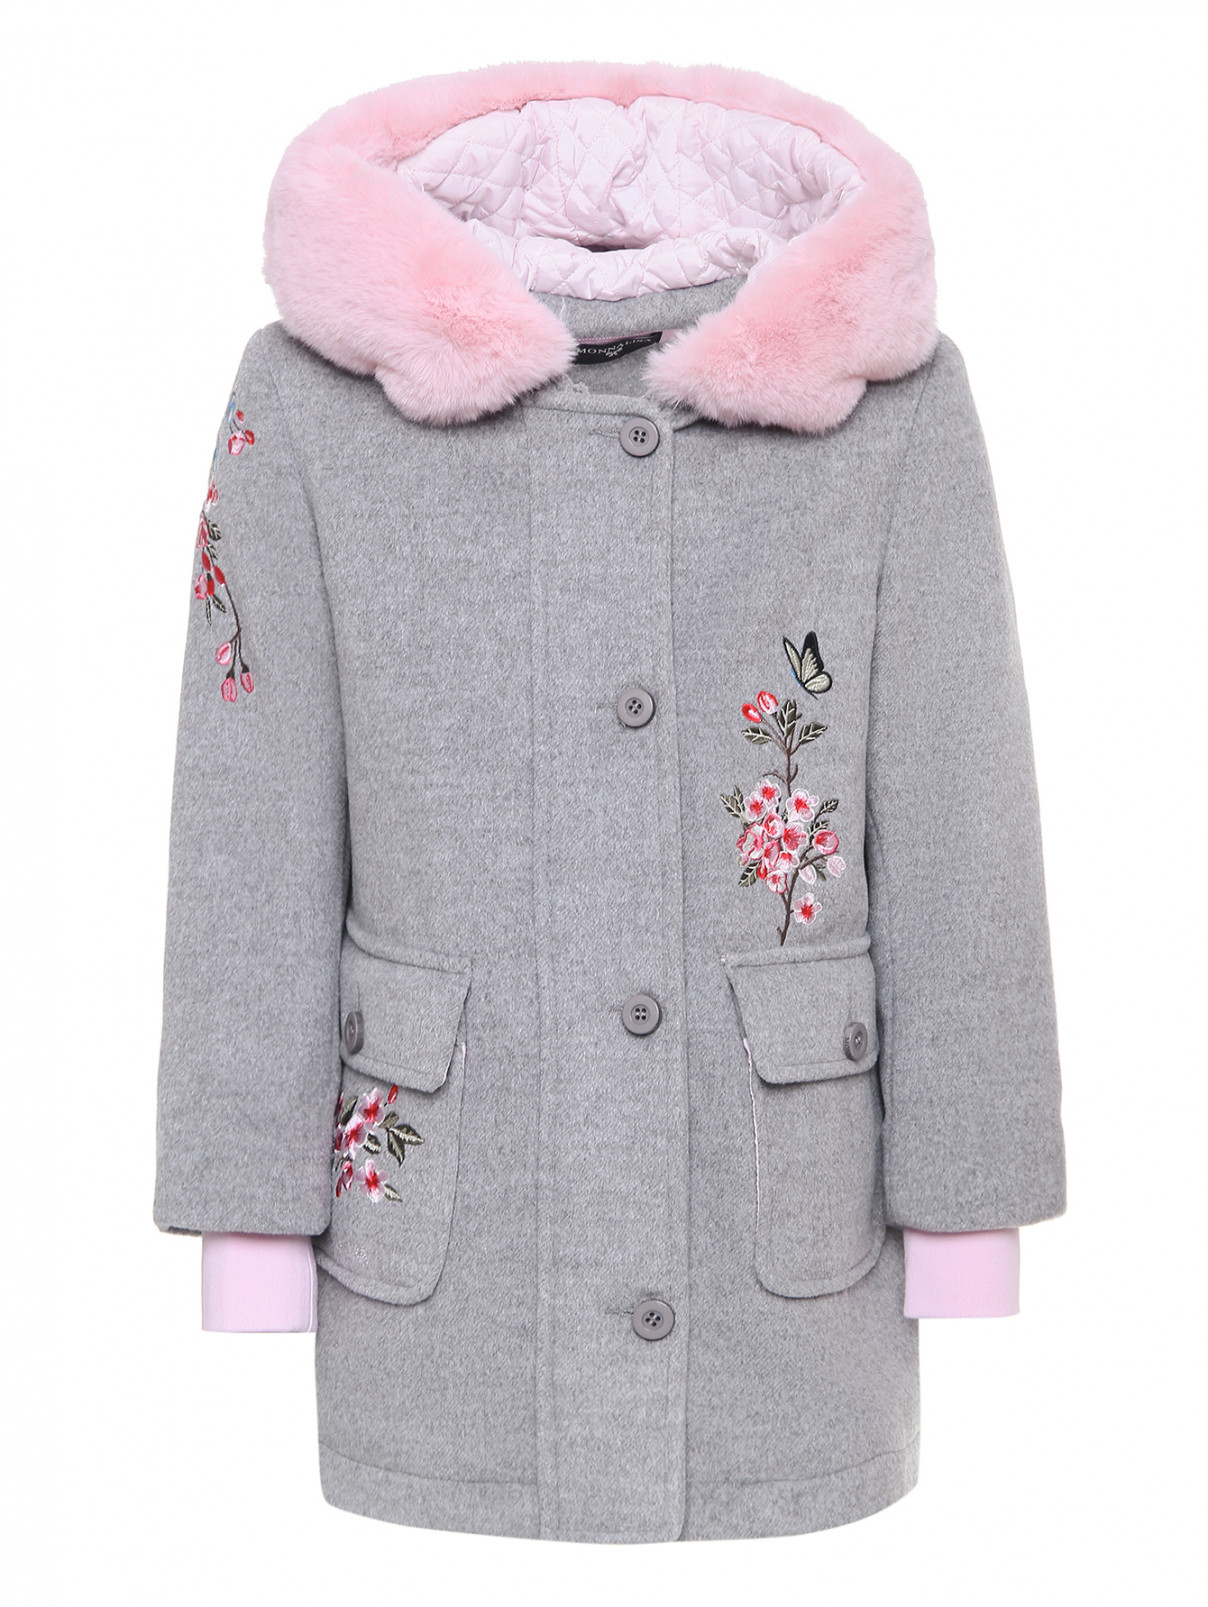 Пальто с вышивкой и накладными карманами MONNALISA  –  Общий вид  – Цвет:  Серый